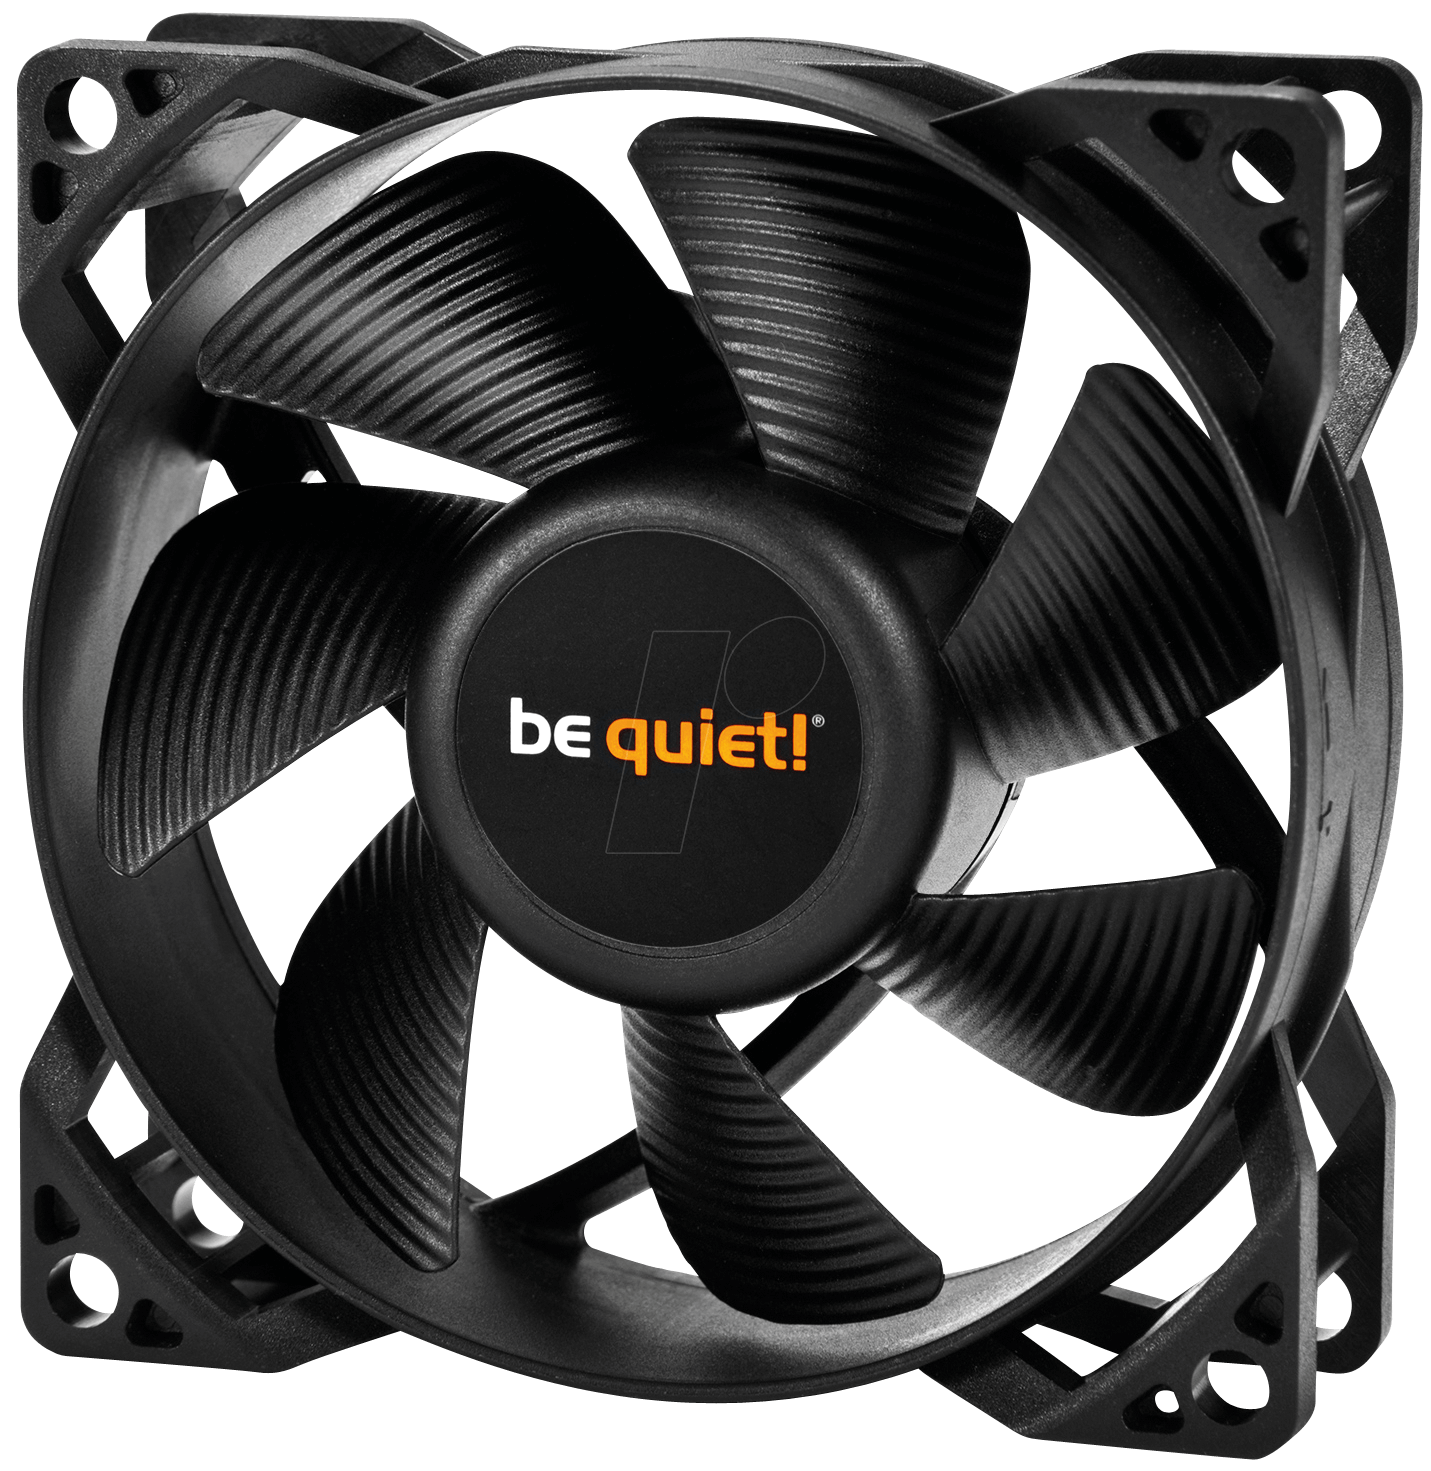 BQT BL037 - be quiet! Pure Wings 2, 80 mm PWM von BEQUIET